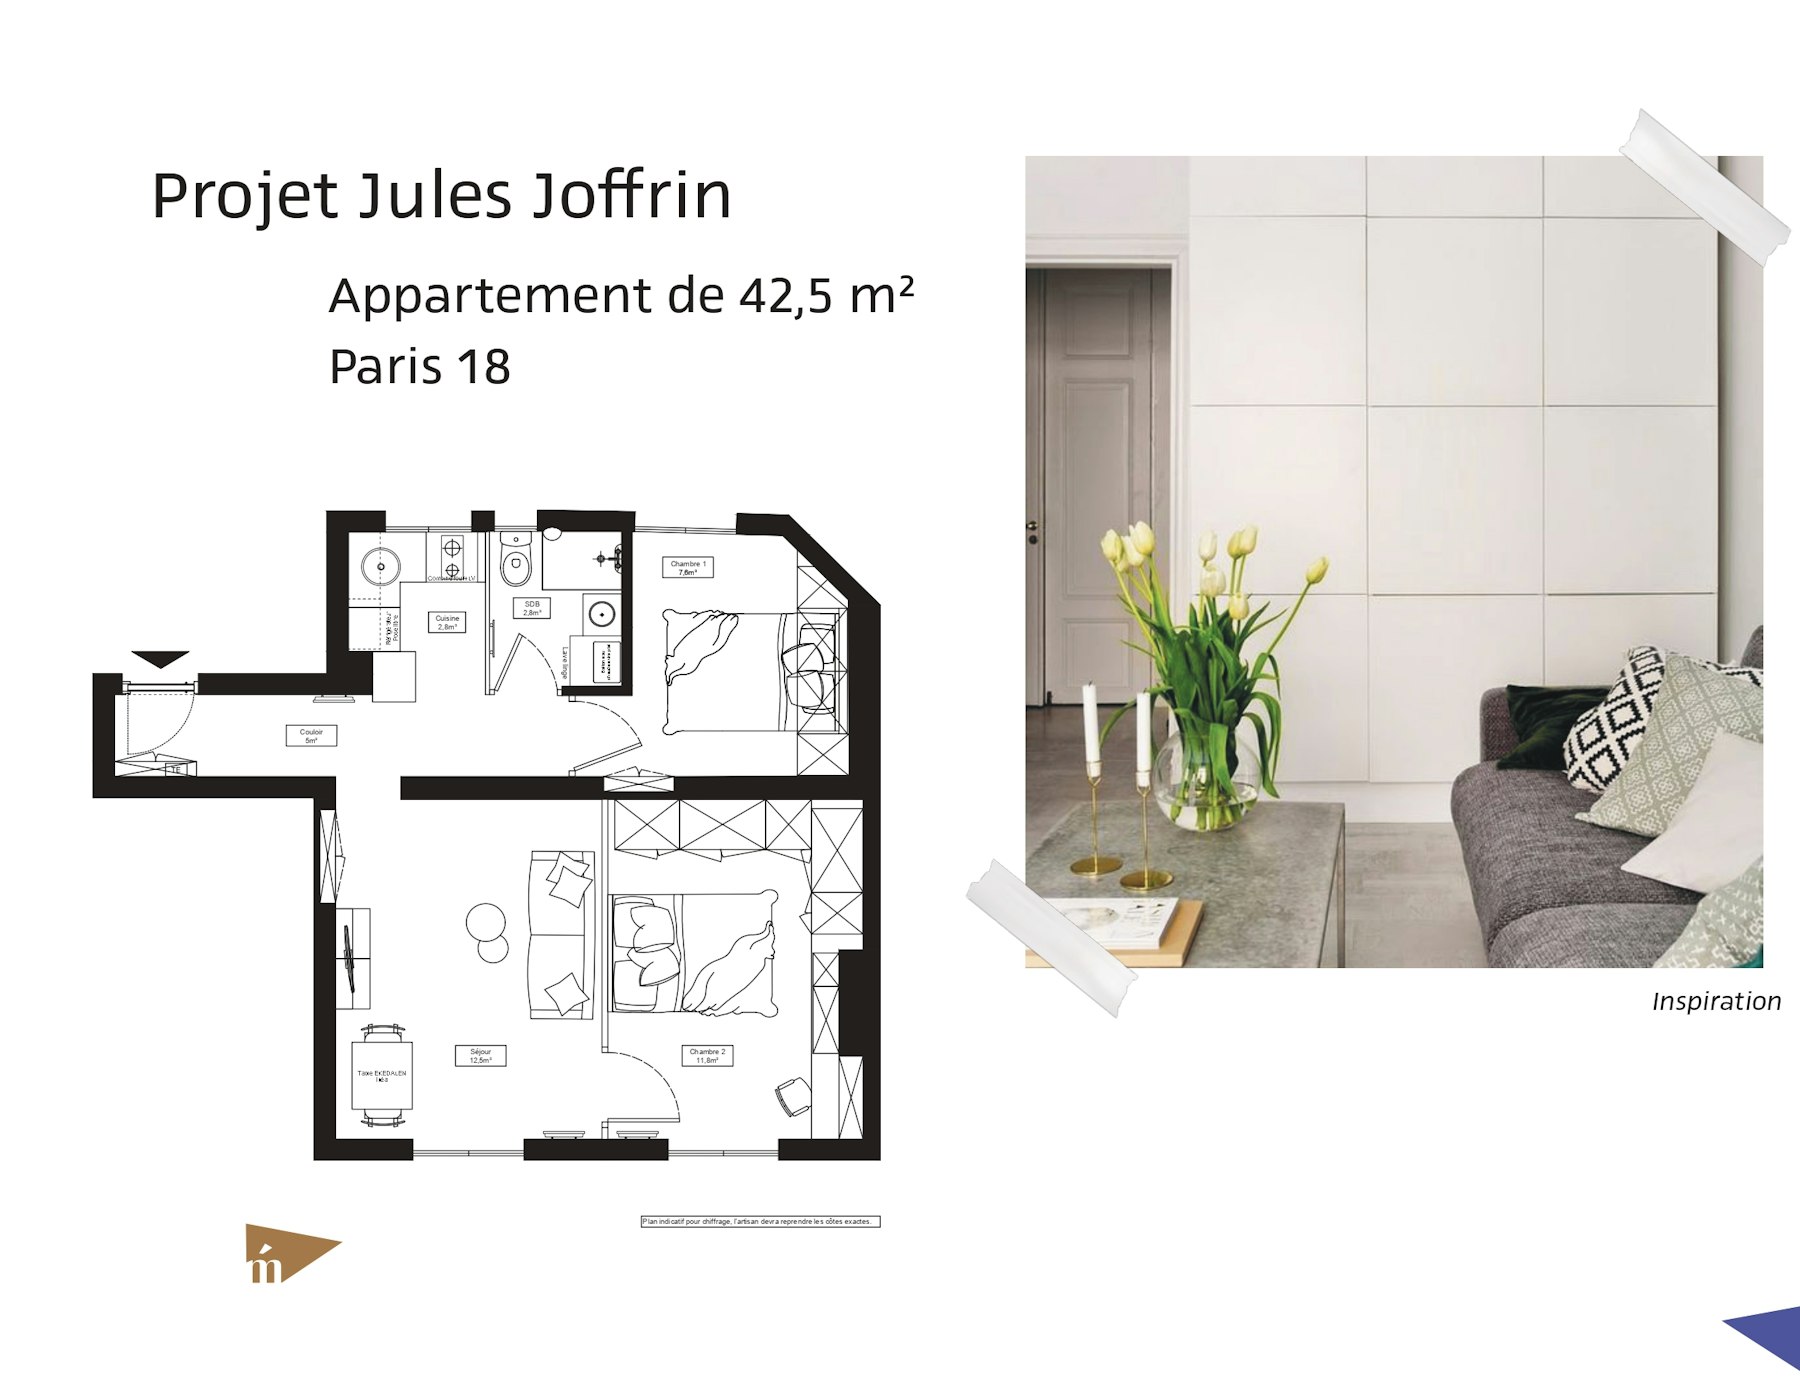 photo Projet Jules Joffrin - Appartement de 42,5m² - Paris 18 Léa Mast - Architecte hemea